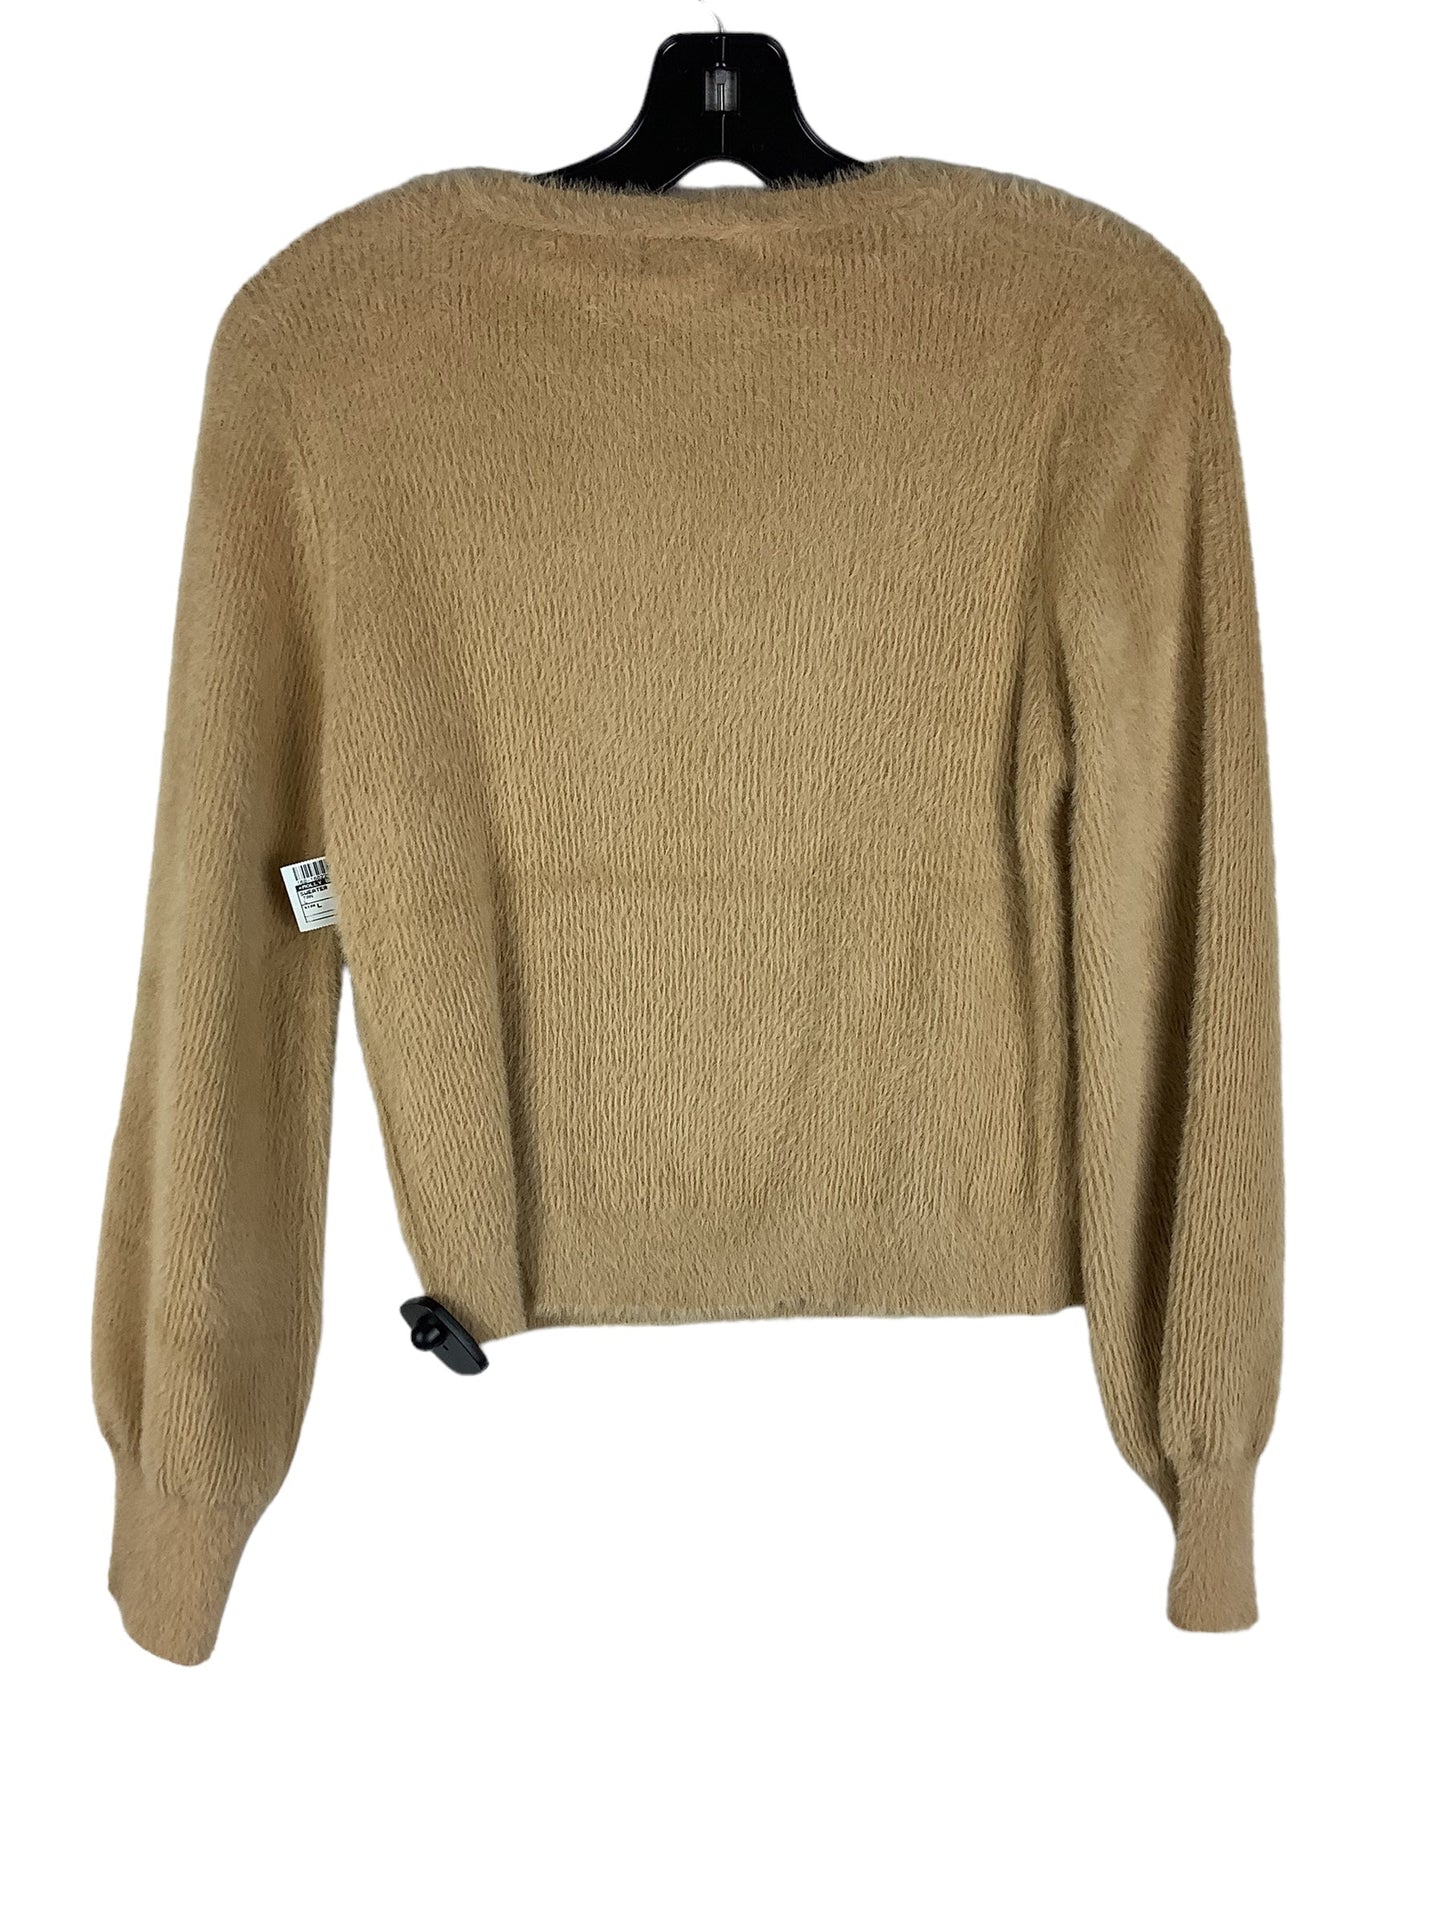 Sweater By Molly Bracken  Size: L